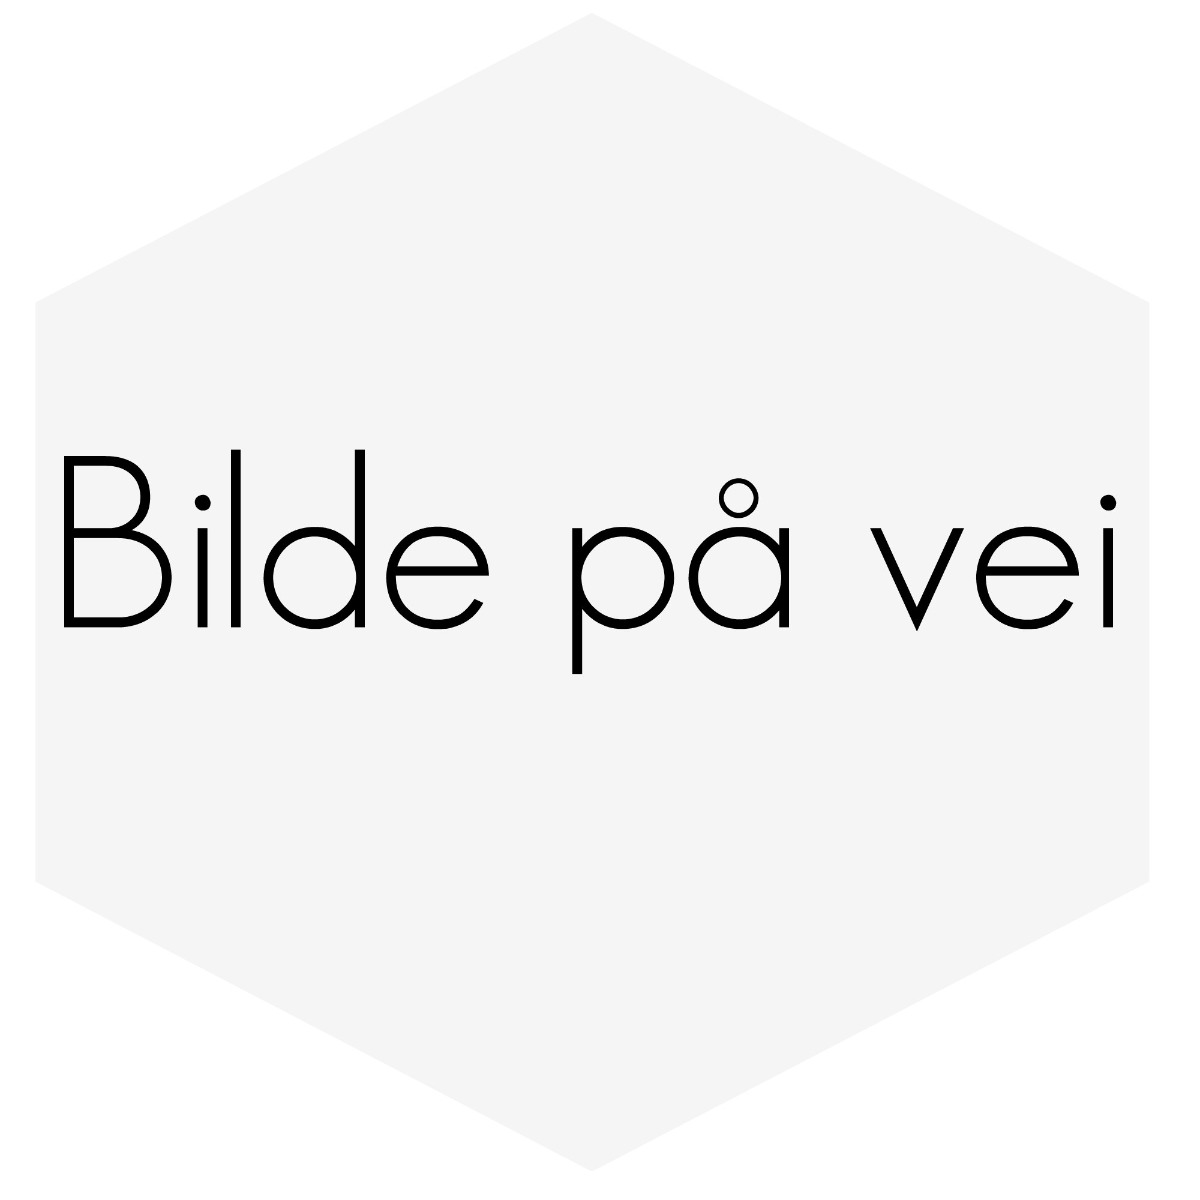 Emblem til eks. ratt på Volvo str.:10x47 mm